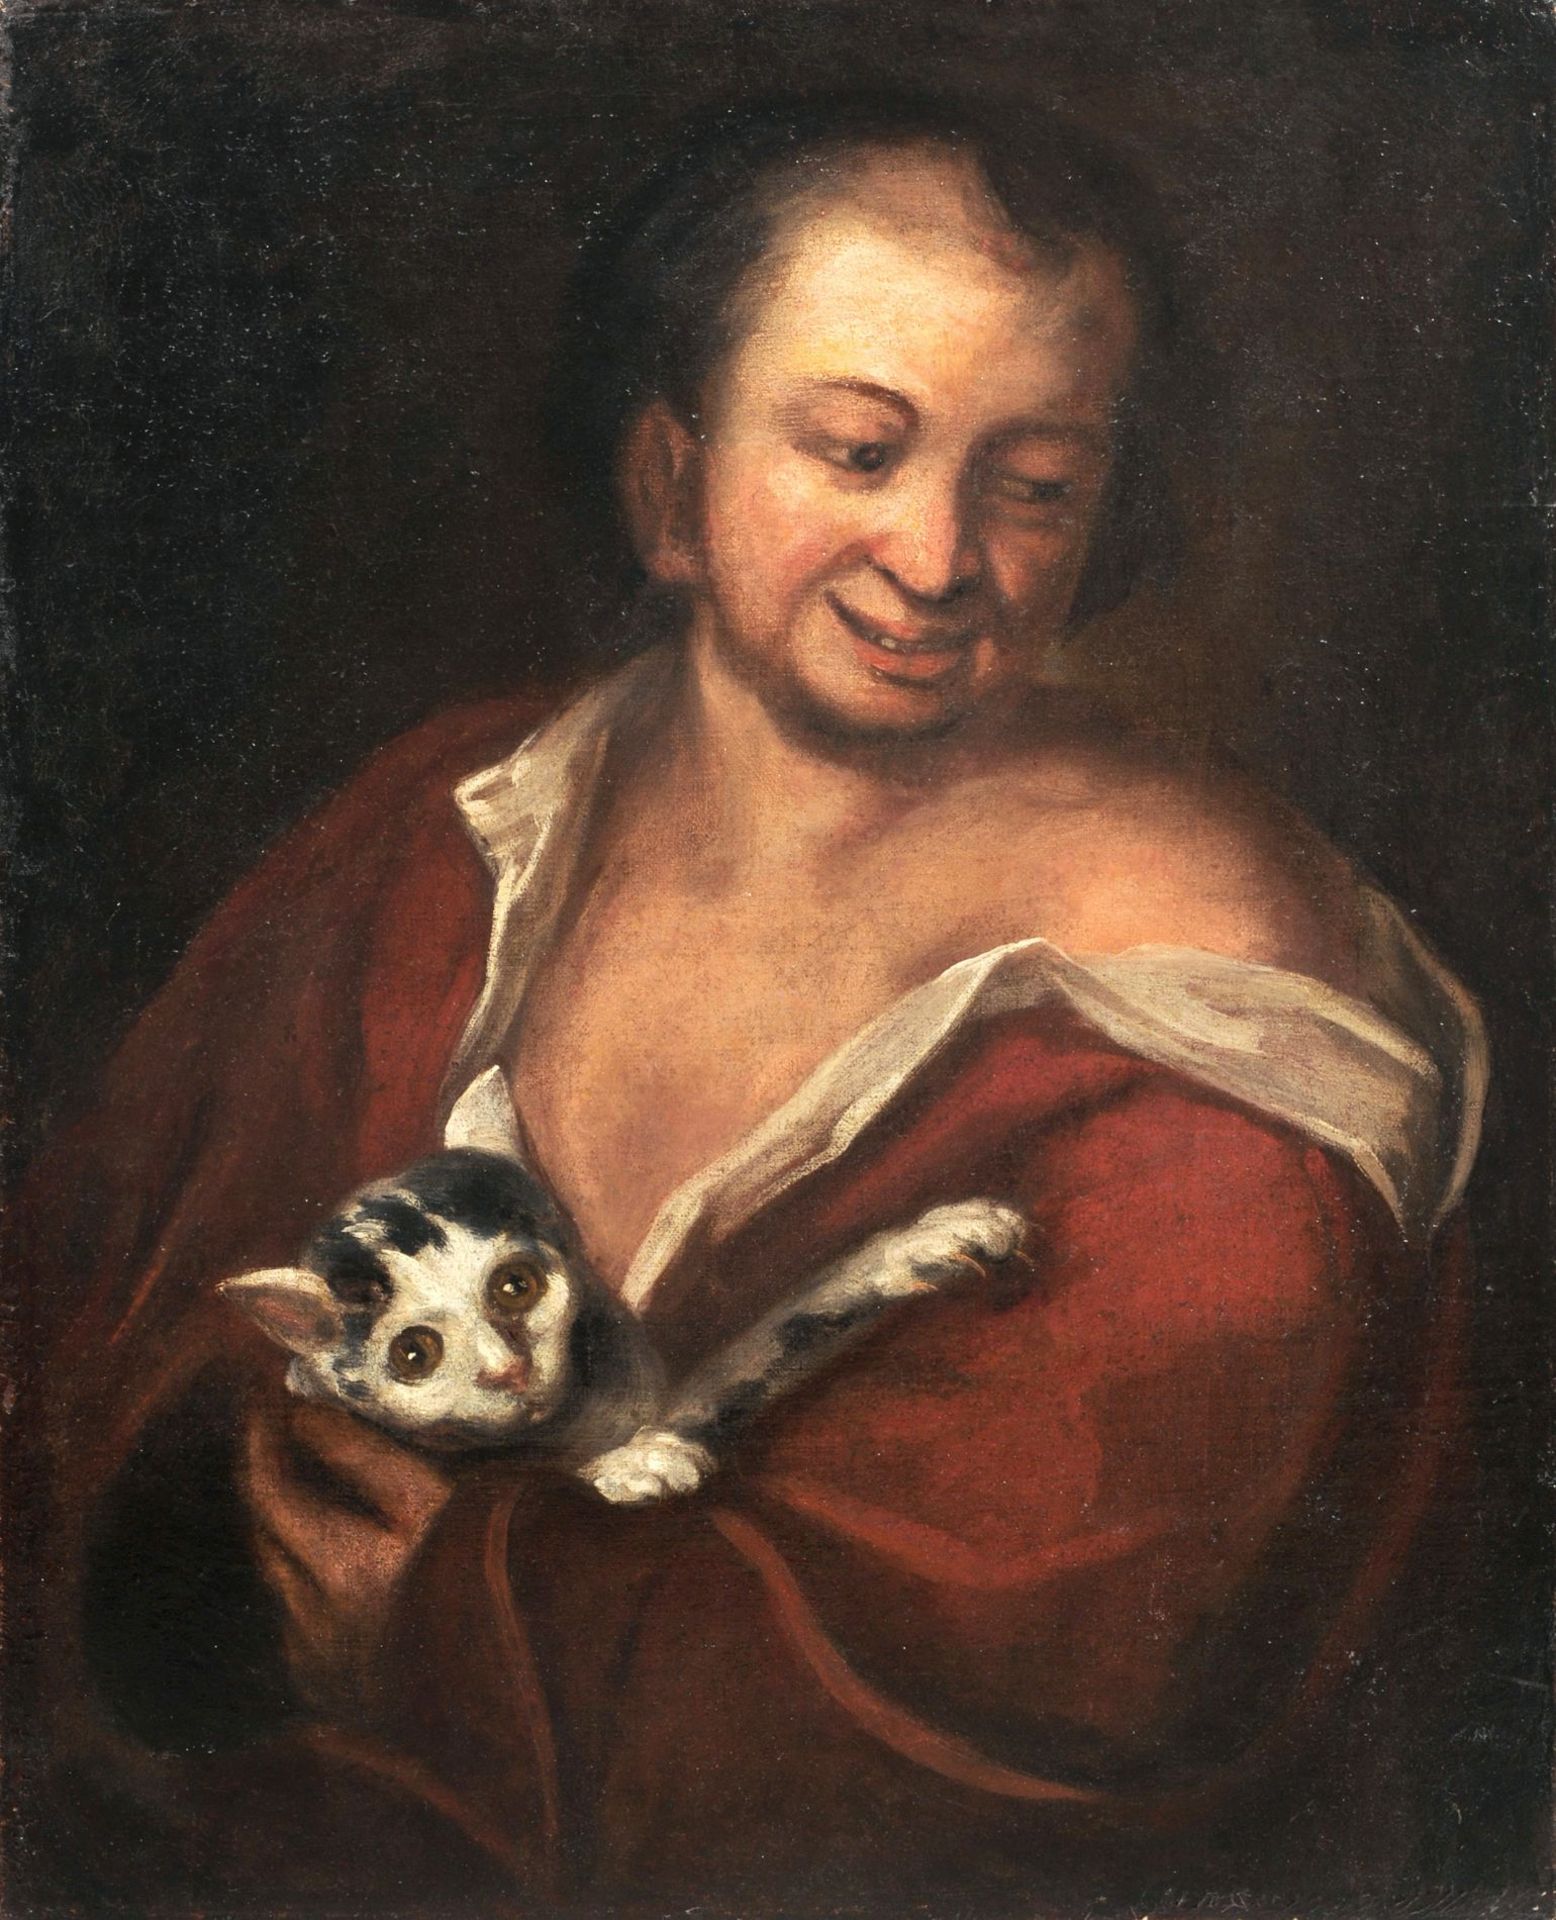 Spanischer (?) Maler, Mann mit Katze. Spätes 17. Jh./18. Jh.